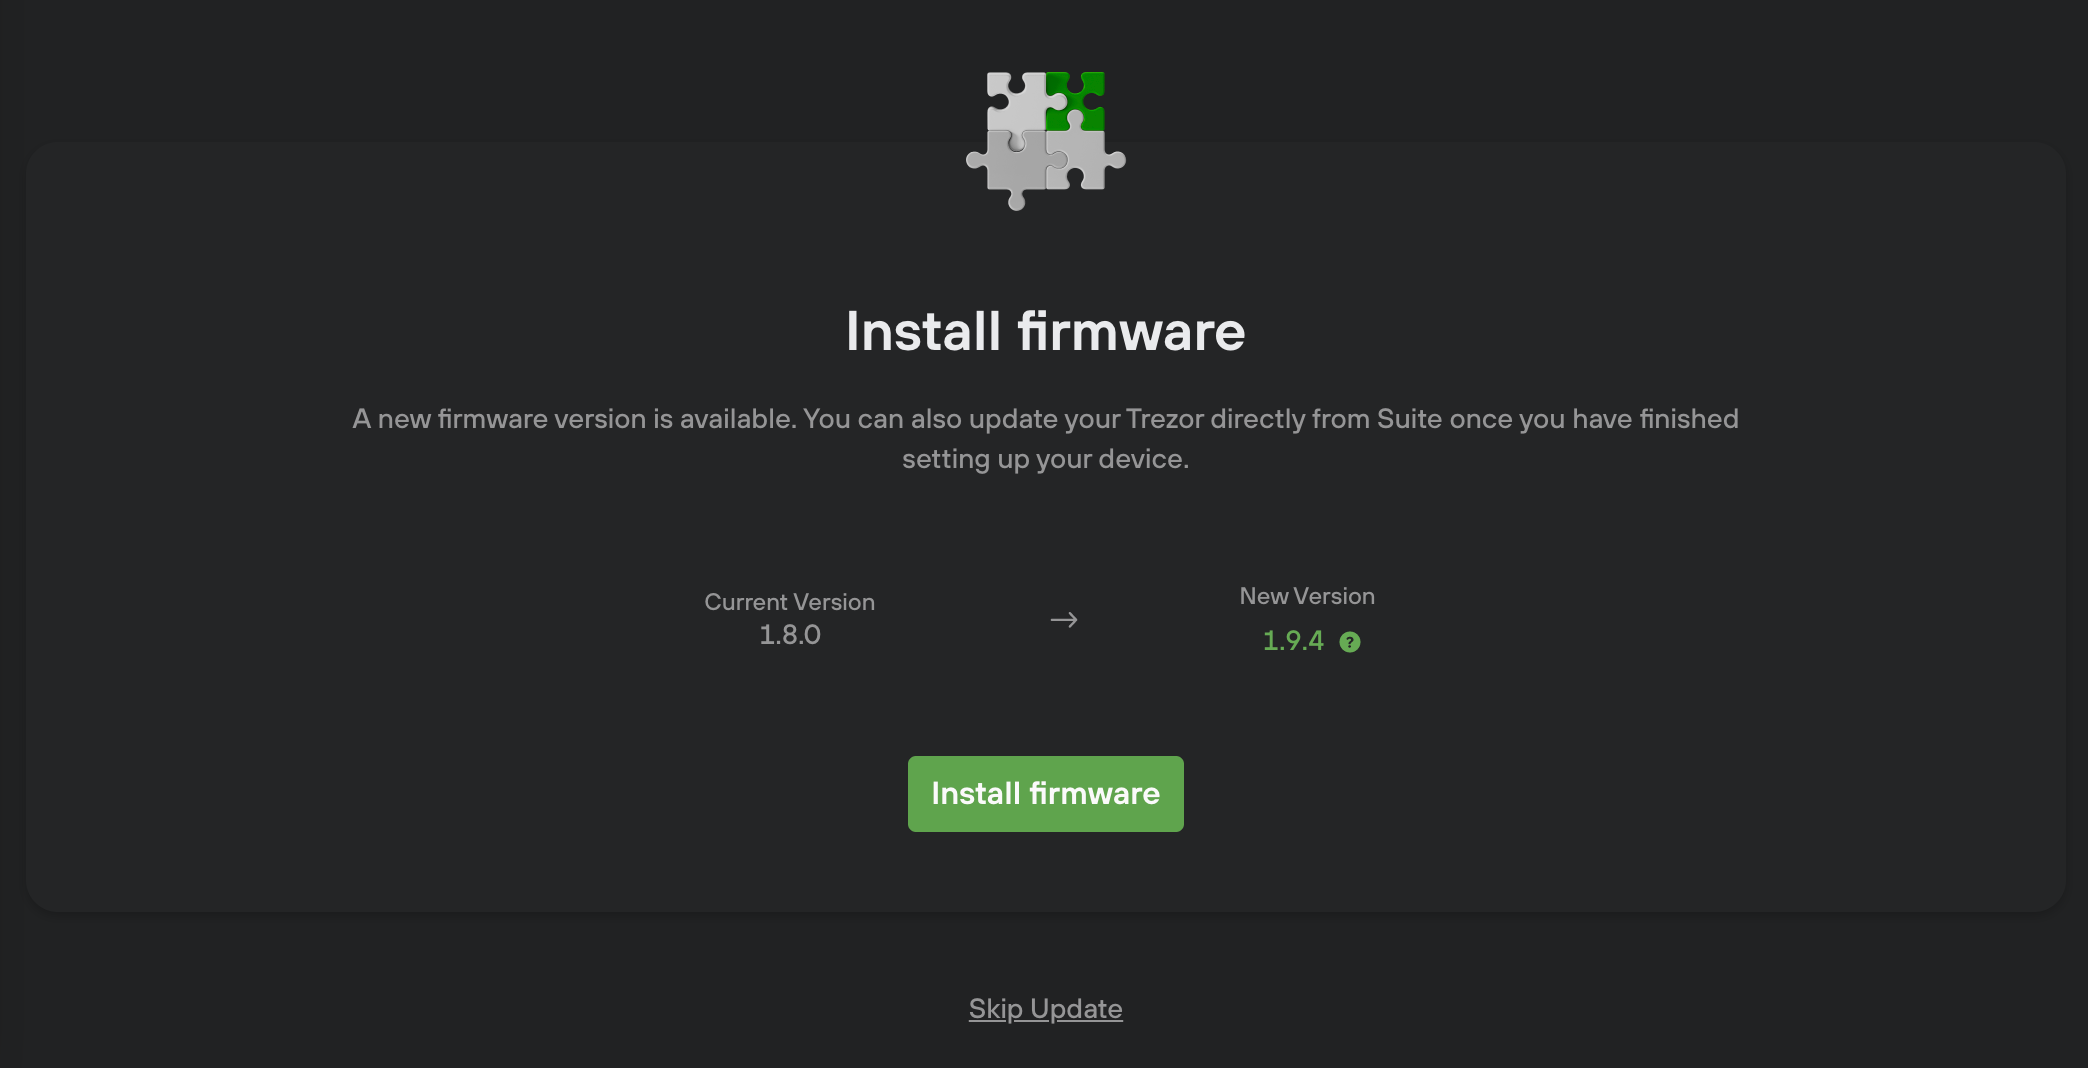 firmware update